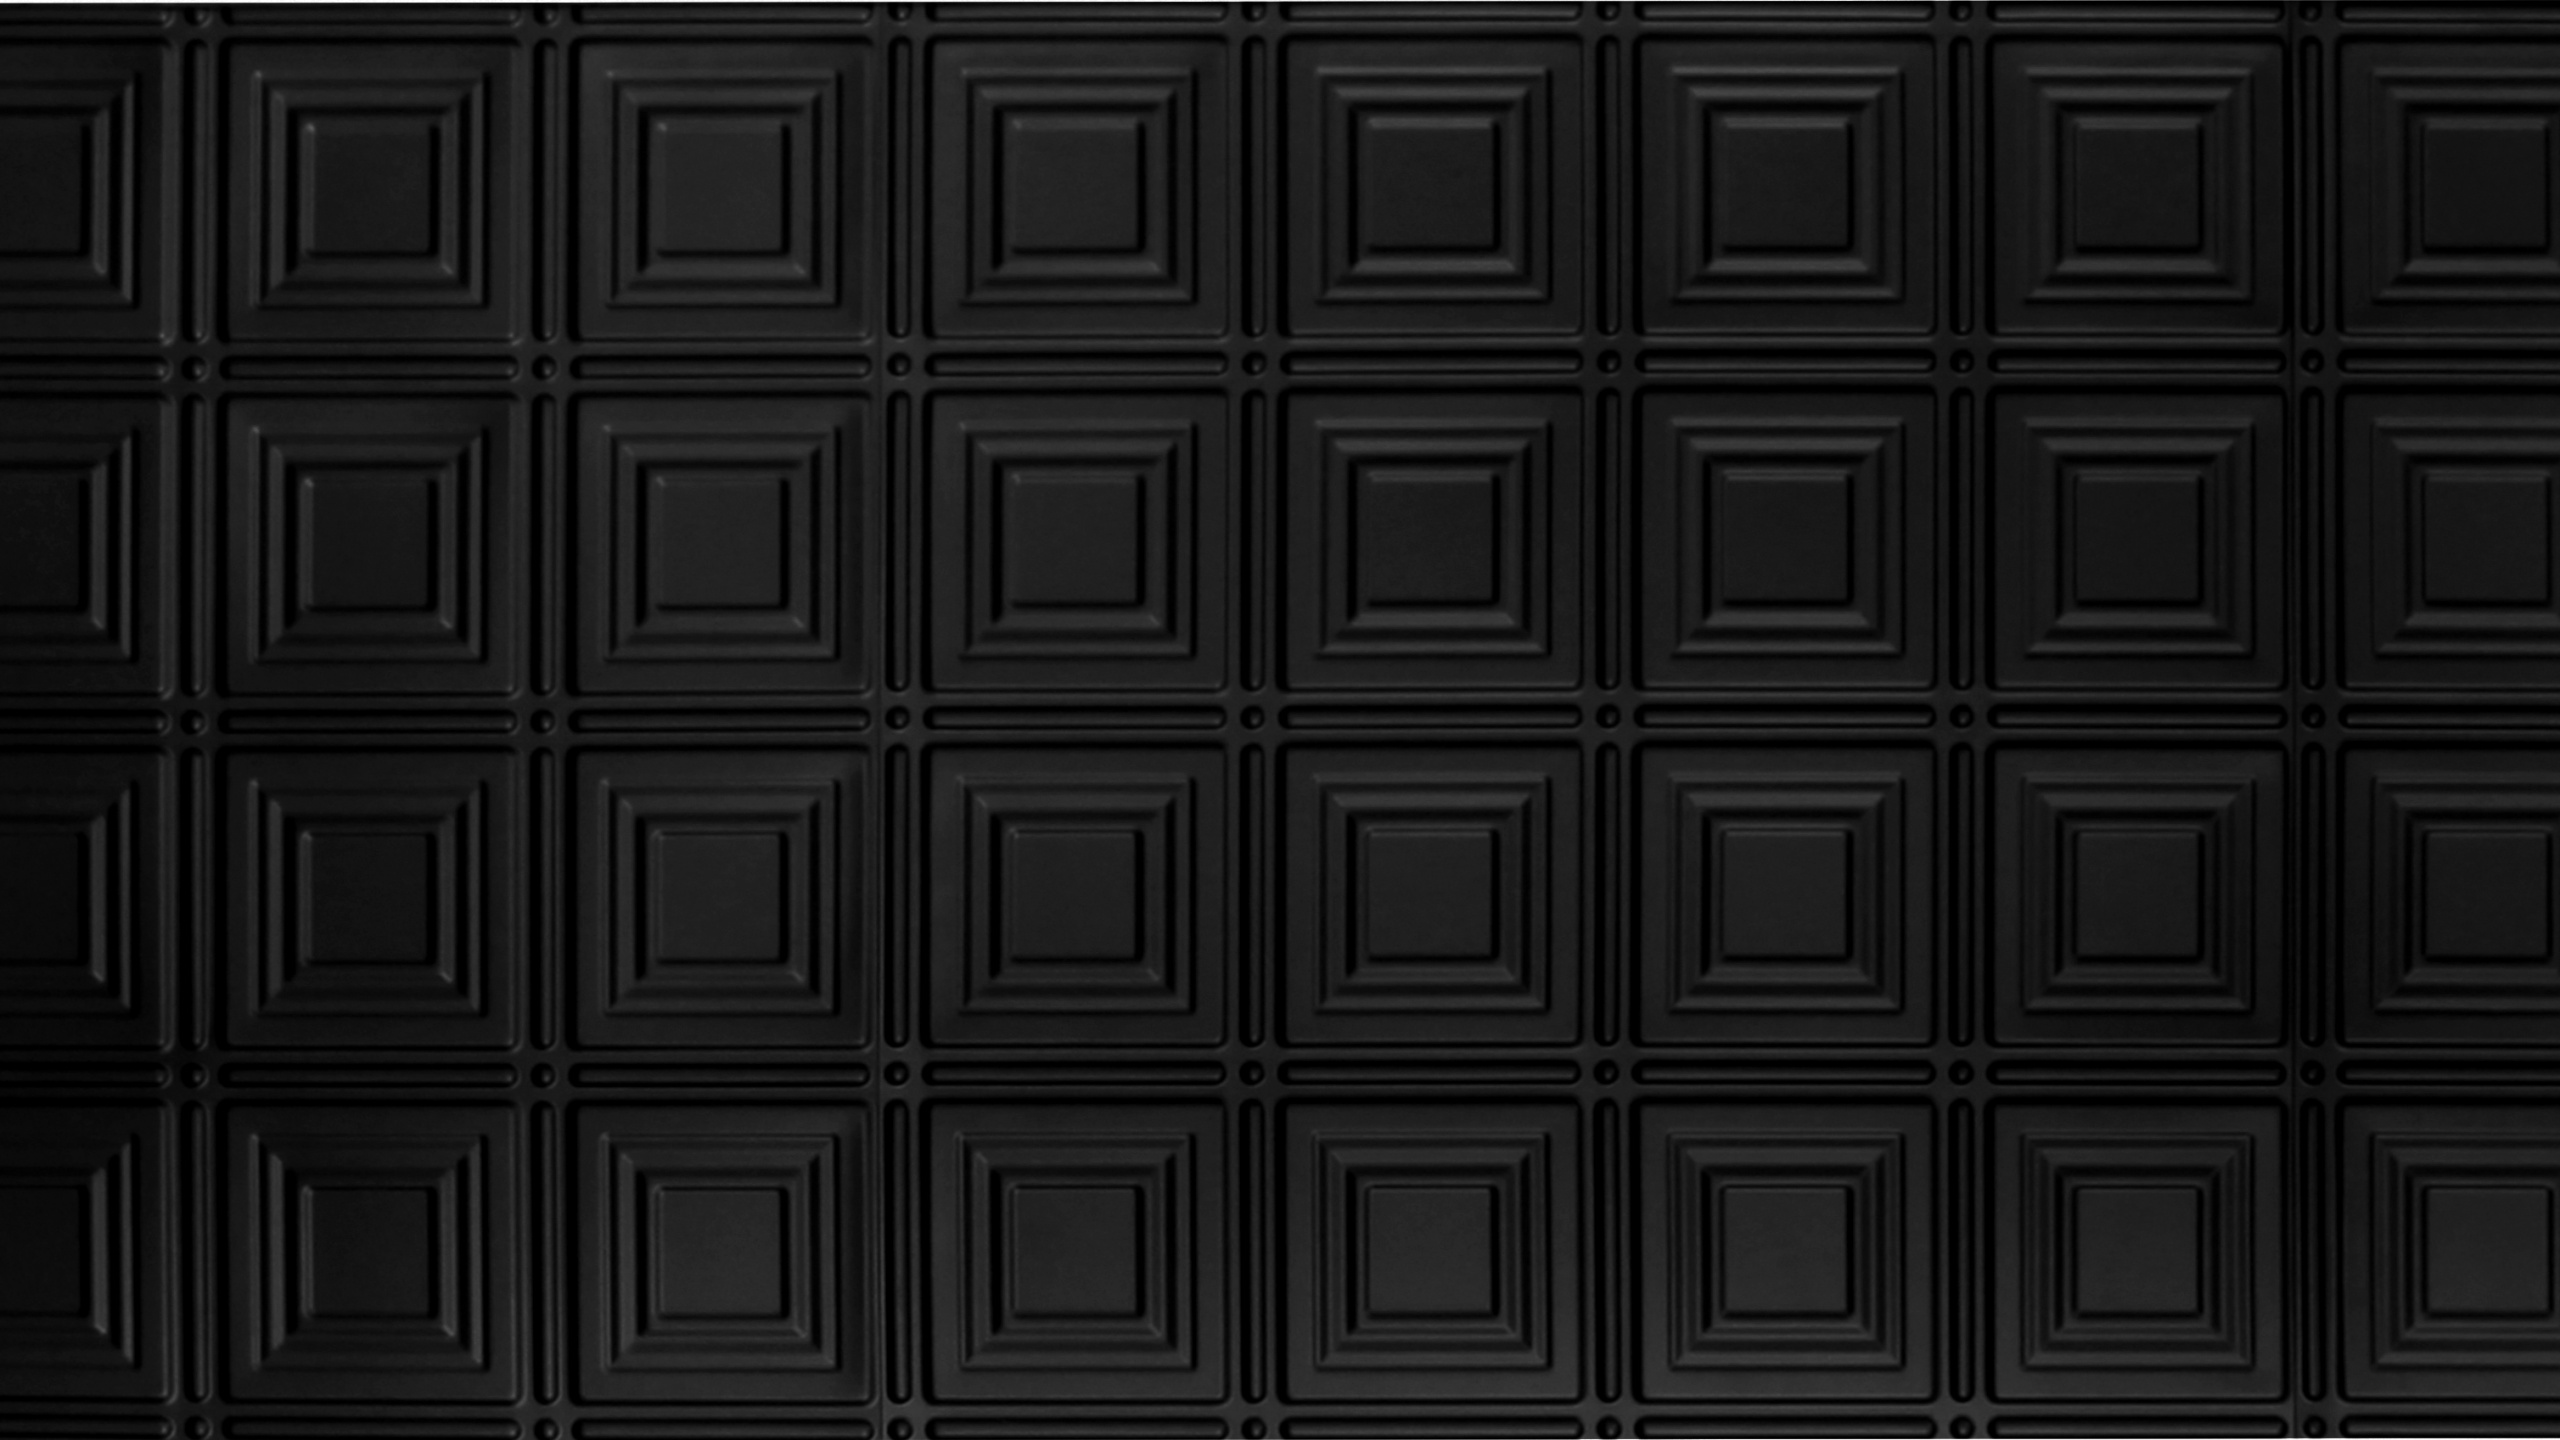 Schwarz-weiß Kariertes Muster. Wallpaper in 2560x1440 Resolution